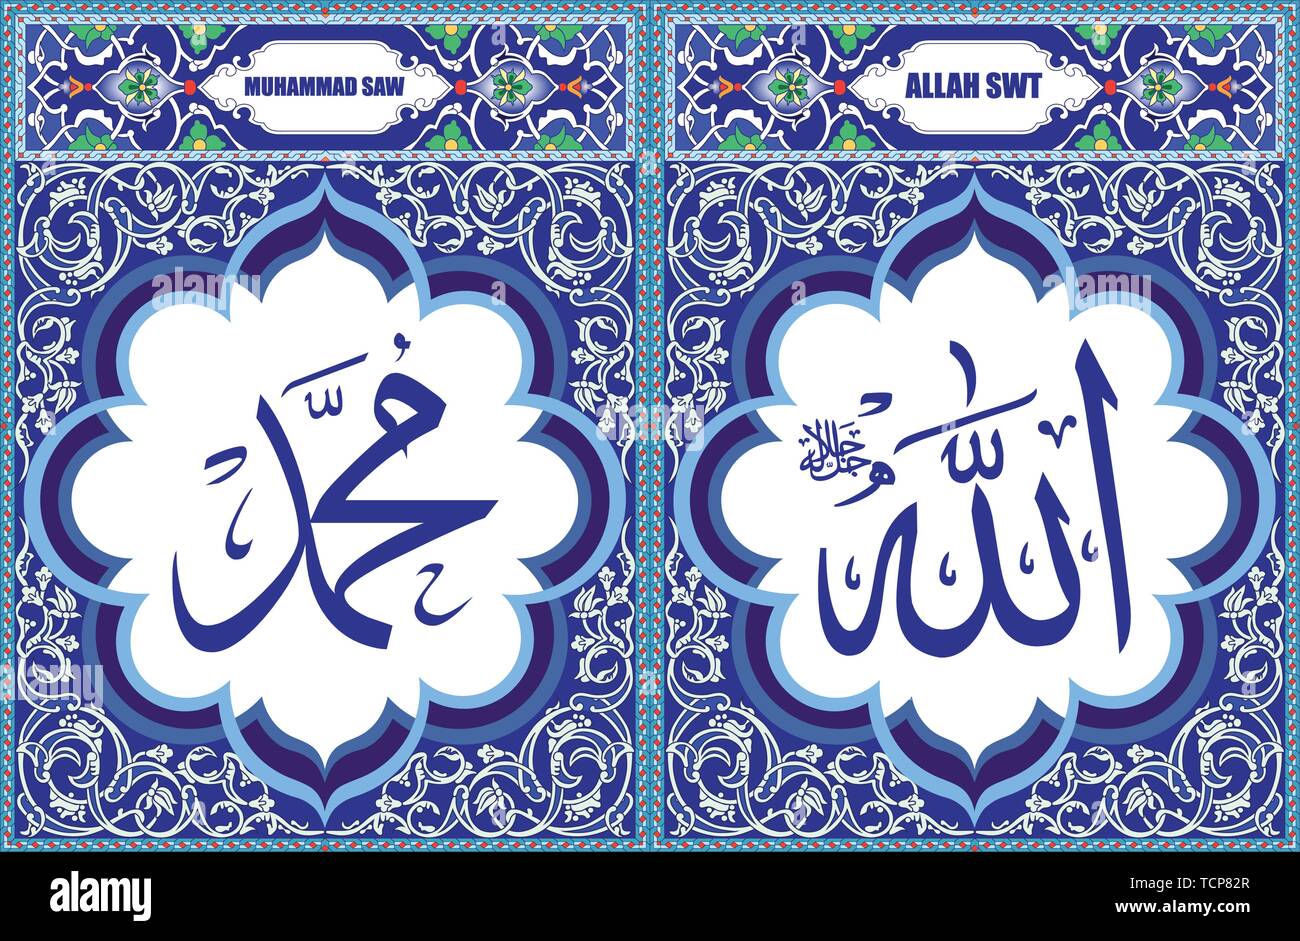 Allah & Muhammad Islamic Art decorating wall art Stock Vector